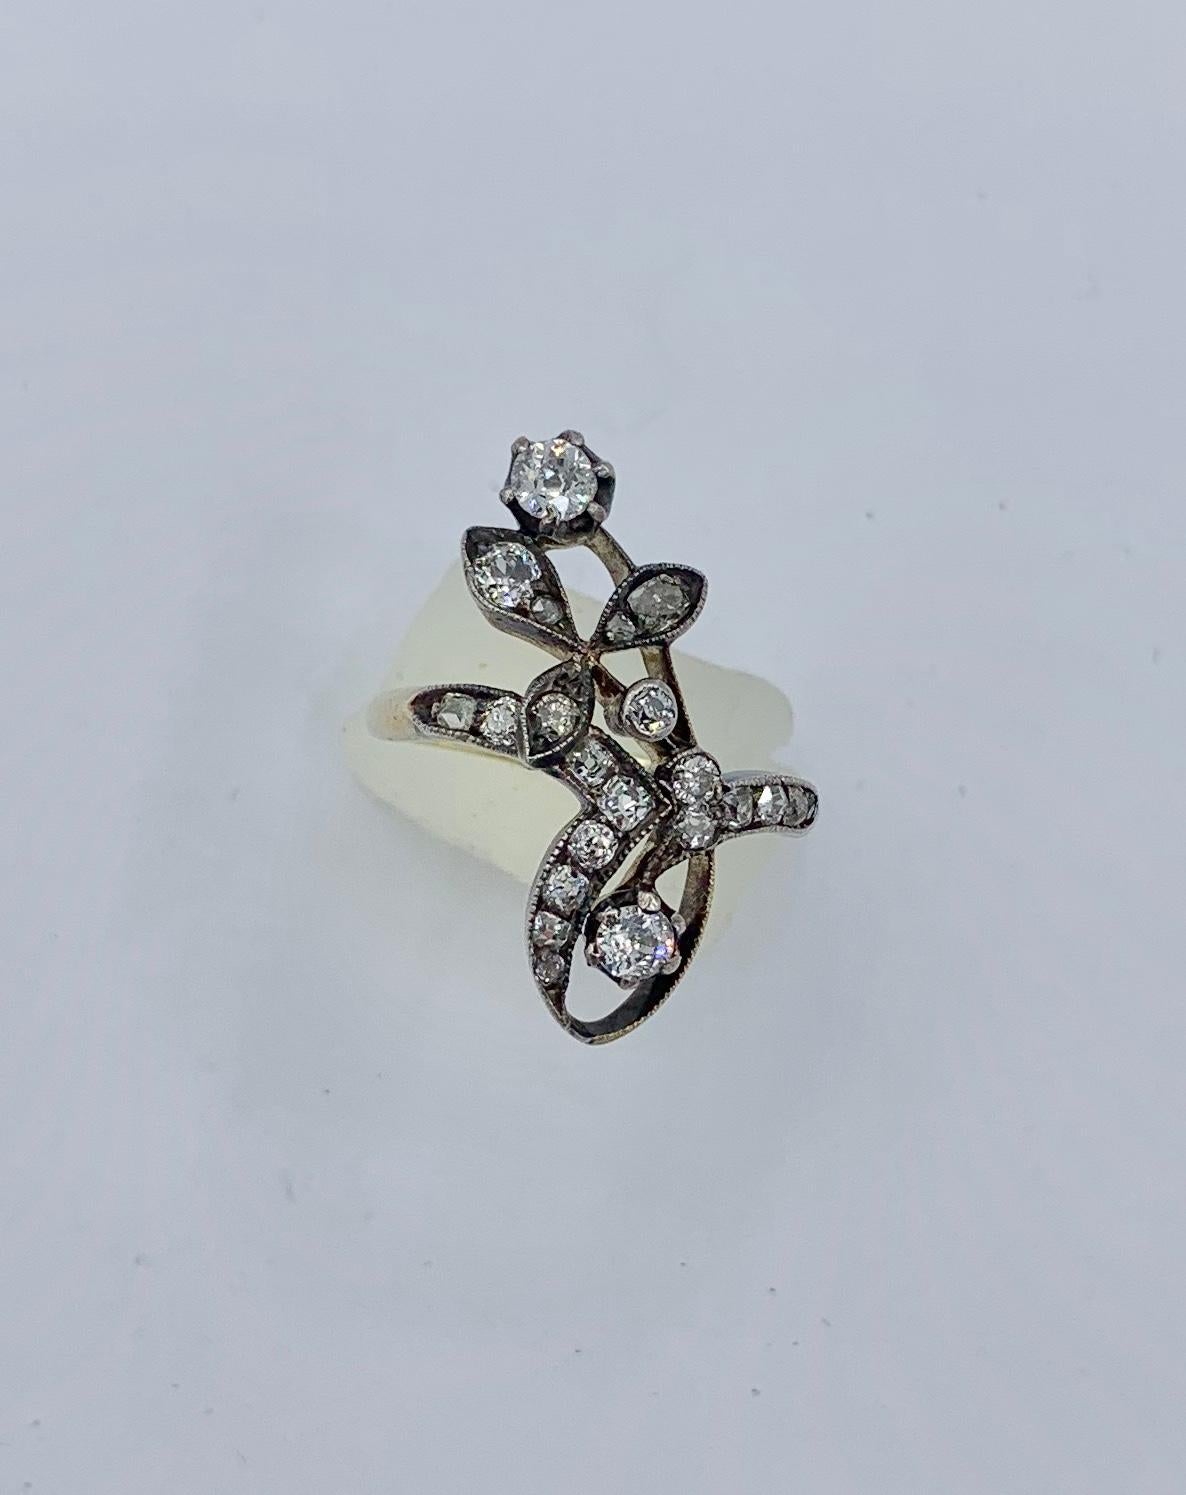 Dies ist ein außergewöhnlicher russischer Art Nouveau, Belle Epoque Old Mine Cut Diamond Ring in einem atemberaubenden und sehr seltenen Blumenmotiv von großer Schönheit.   Die Diamanten im alten Minenschliff sind in Silber auf 14 Karat Gold